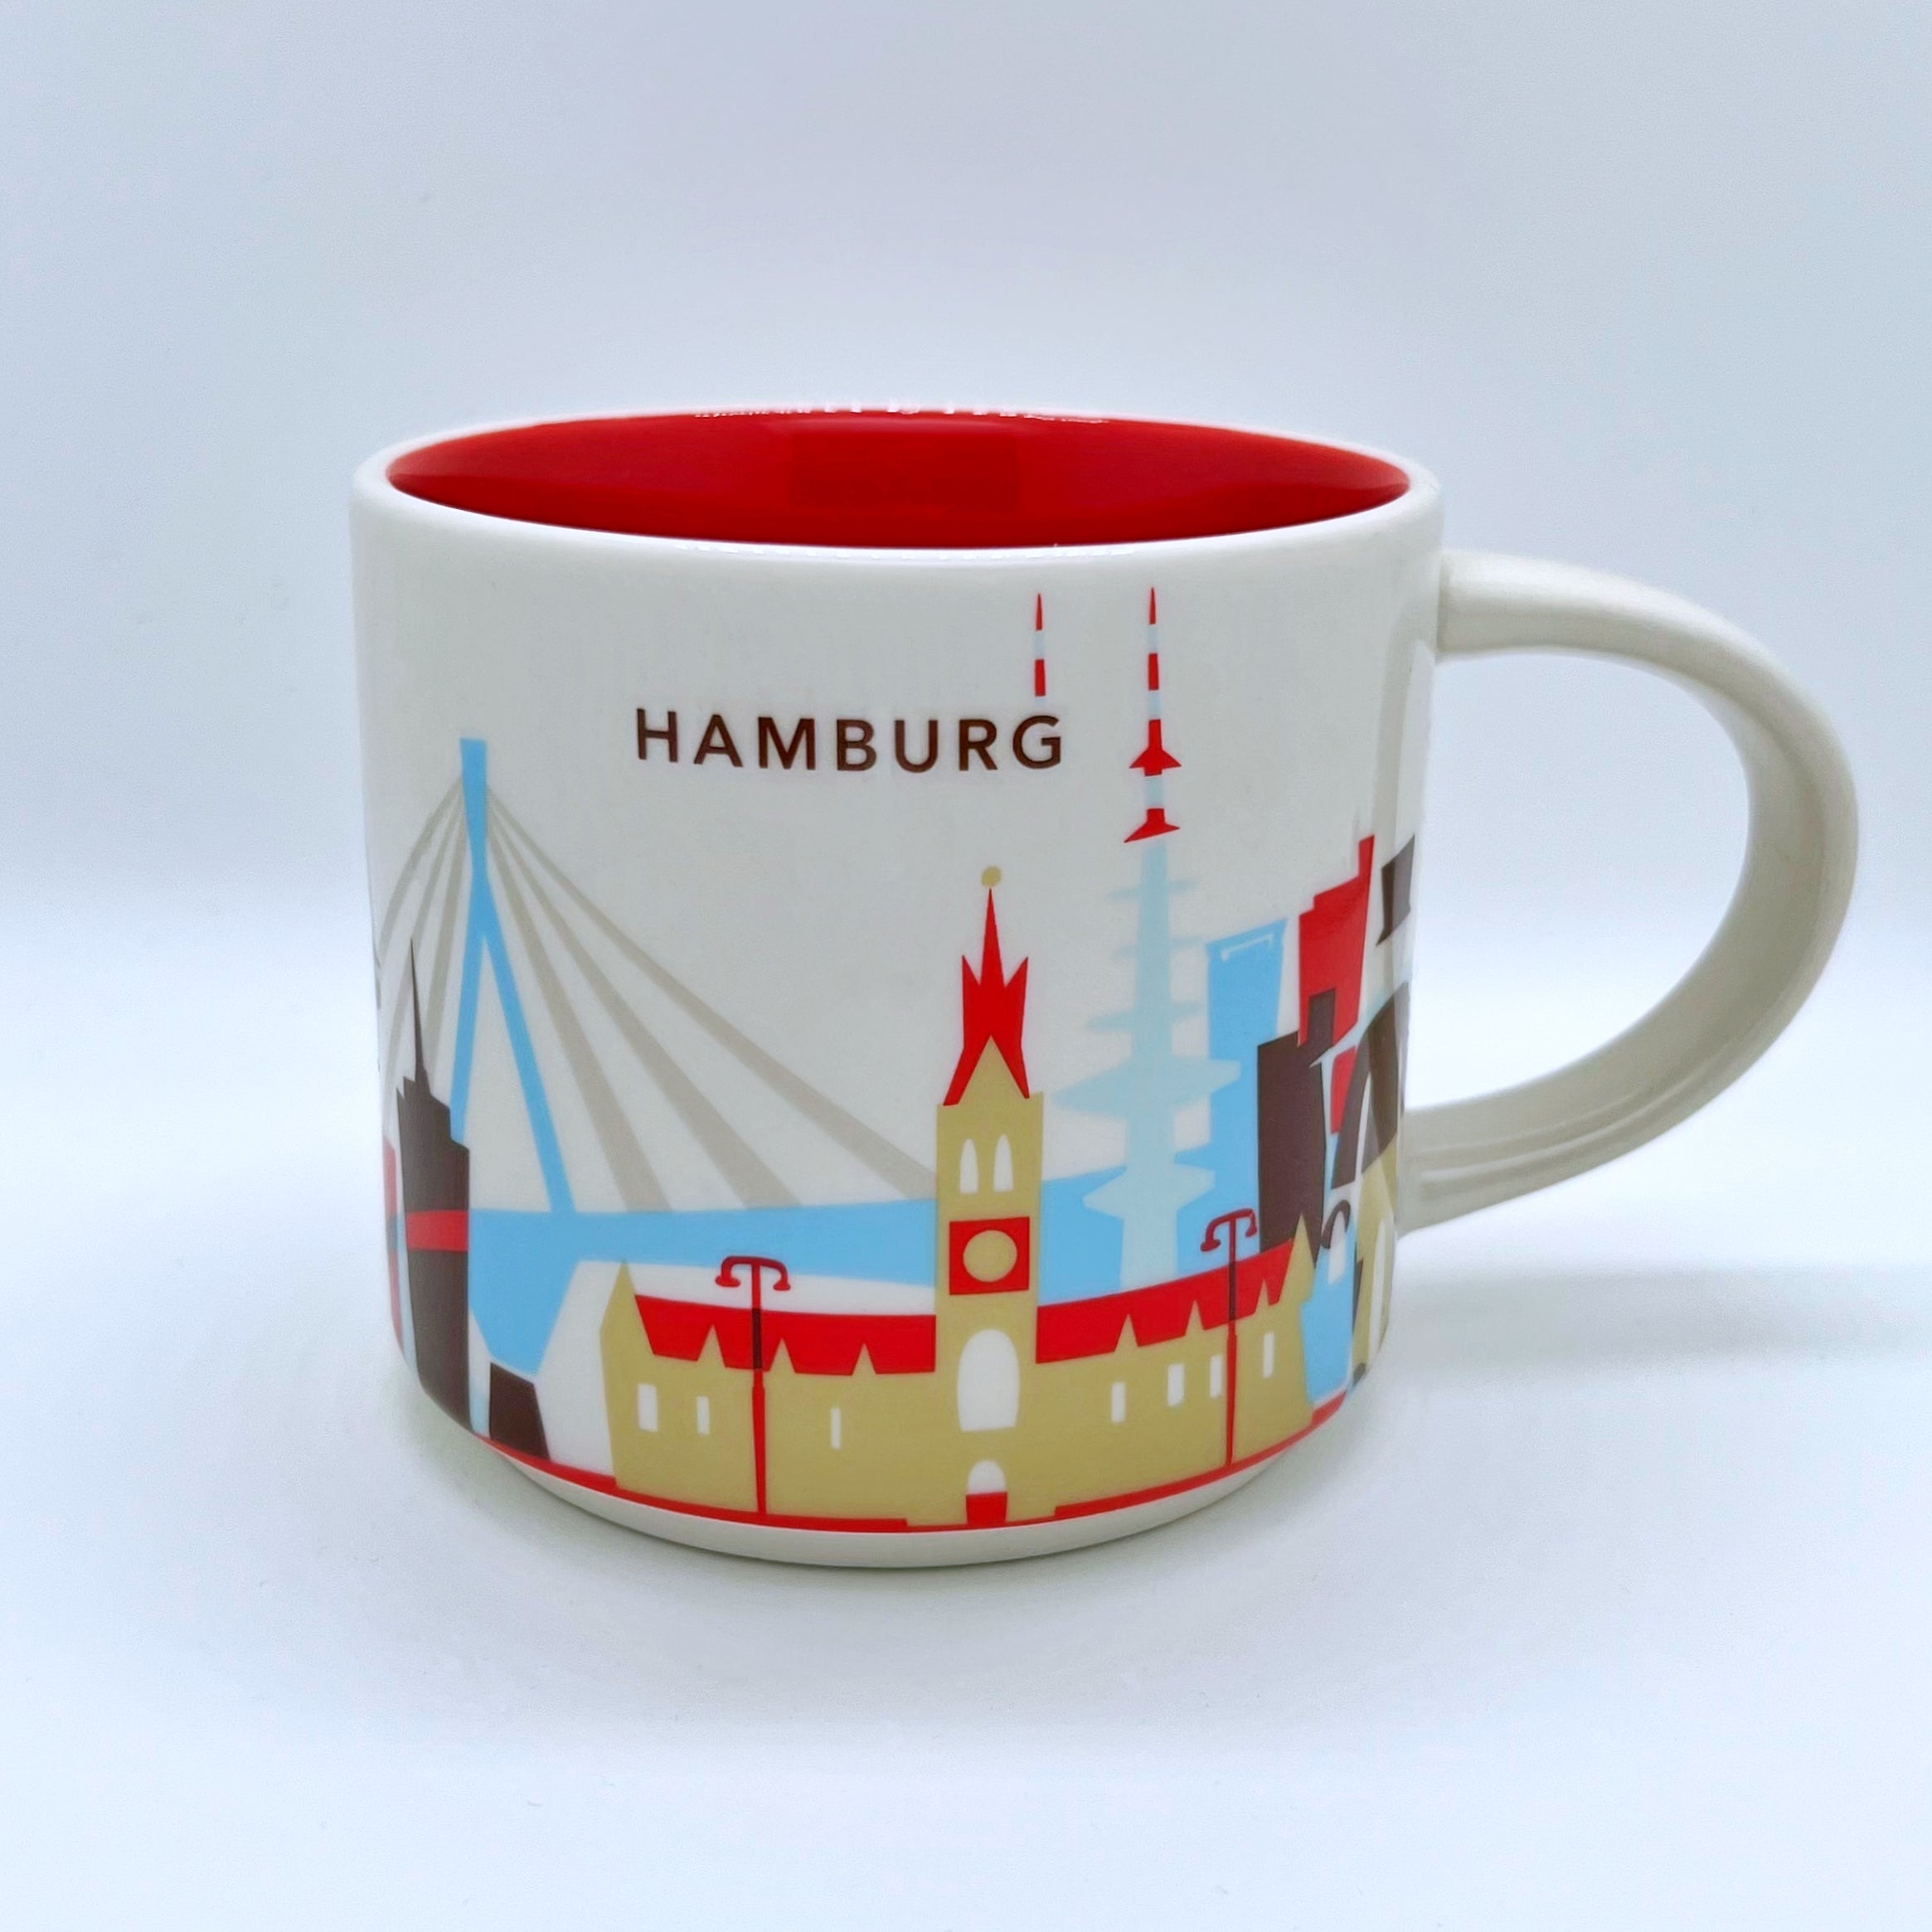 Kaffee Tee und Cappuccino Tasse von Starbucks mit gemalten Bildern aus der Stadt Hamburg